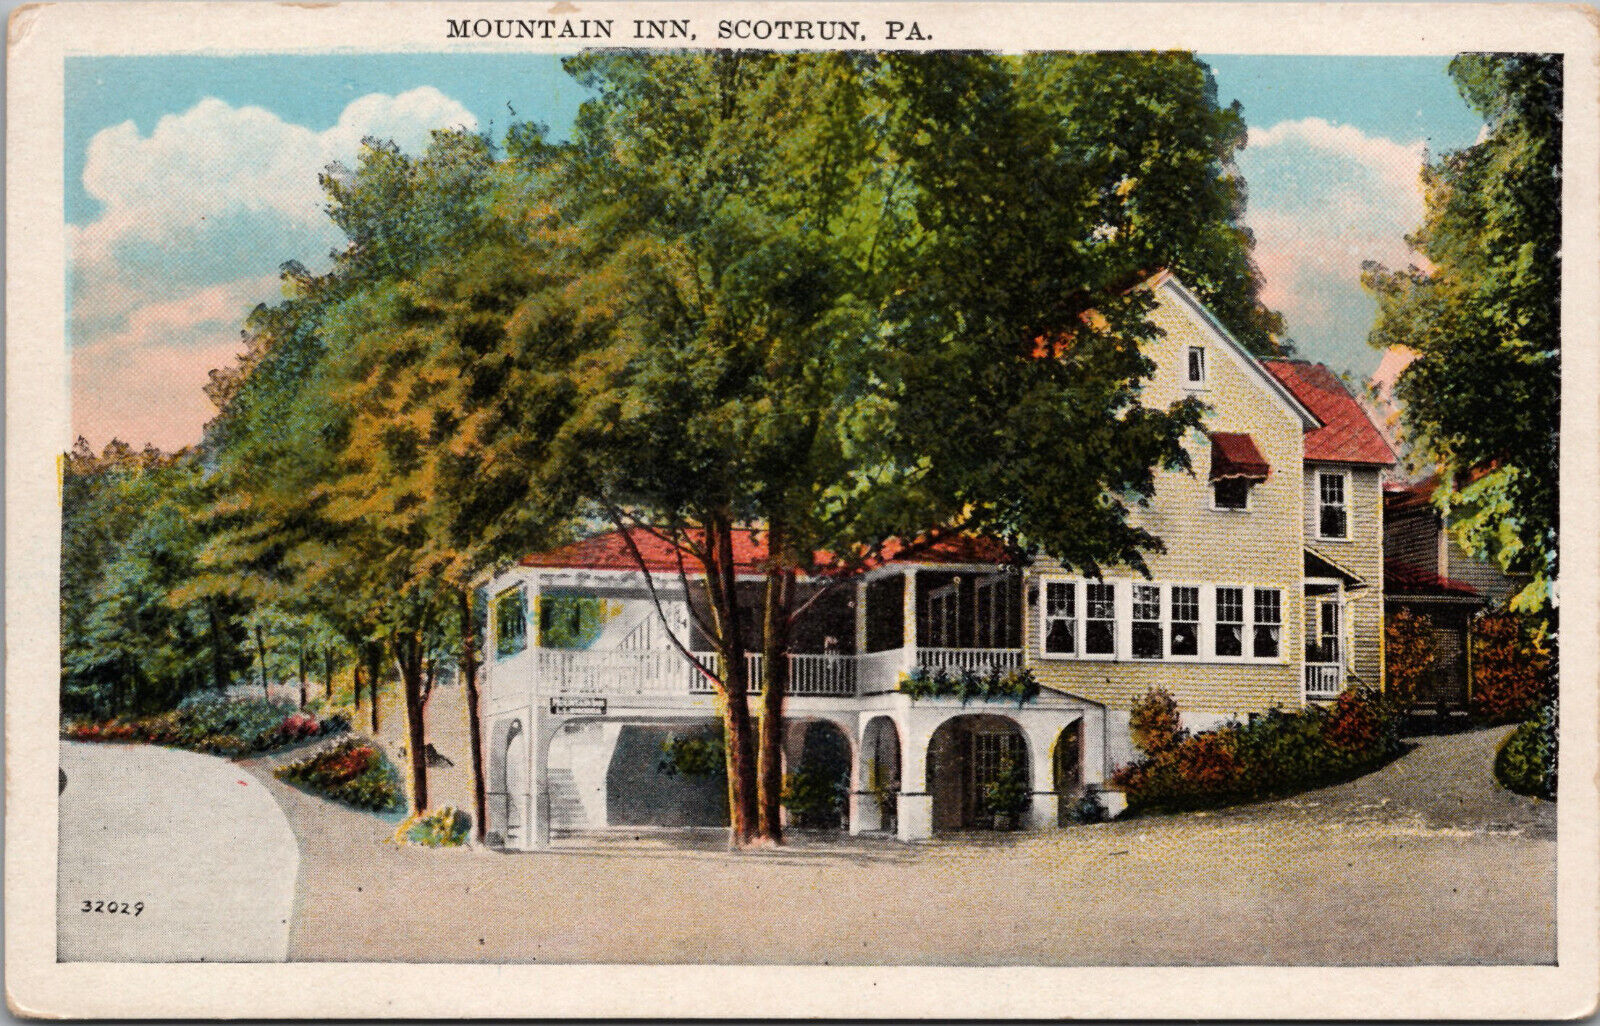 Scotrun Pa Pennsylvania - Mountain Inn - Monroe County - Postcard - 1920's